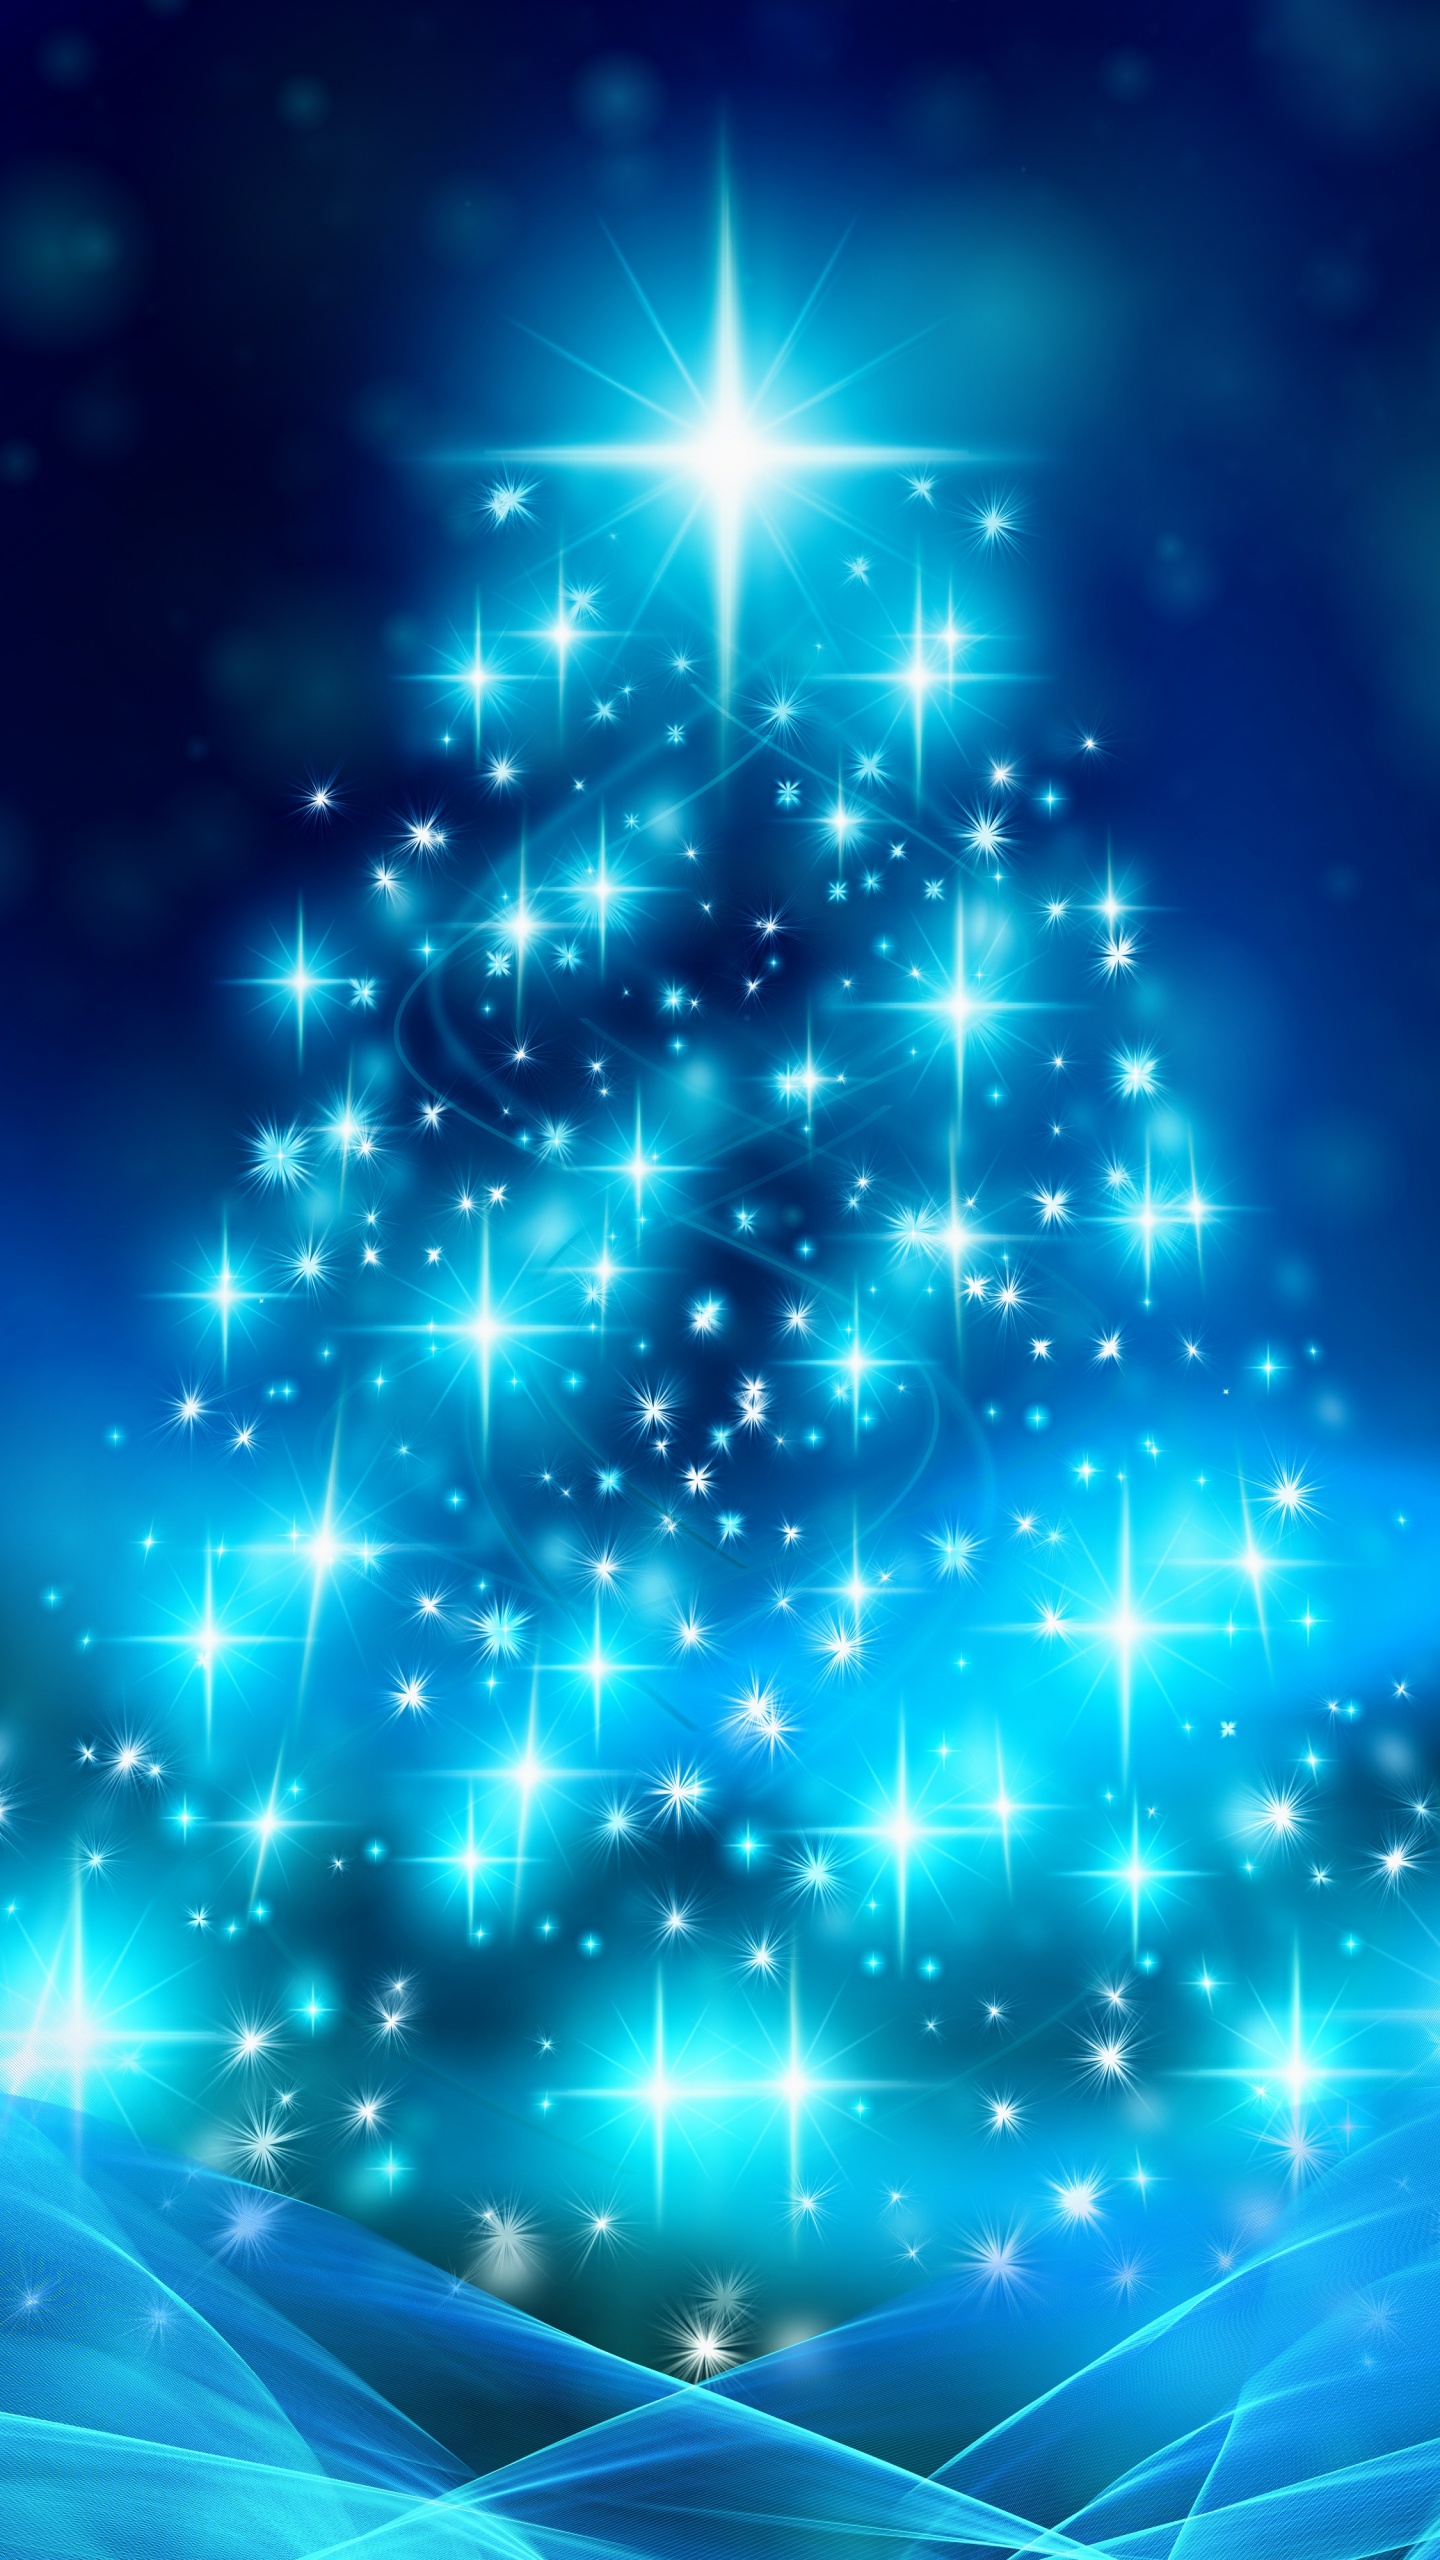 Weihnachten, Weihnachtsbaum, Weihnachtsdekoration, Blau, Baum. Wallpaper in 1440x2560 Resolution